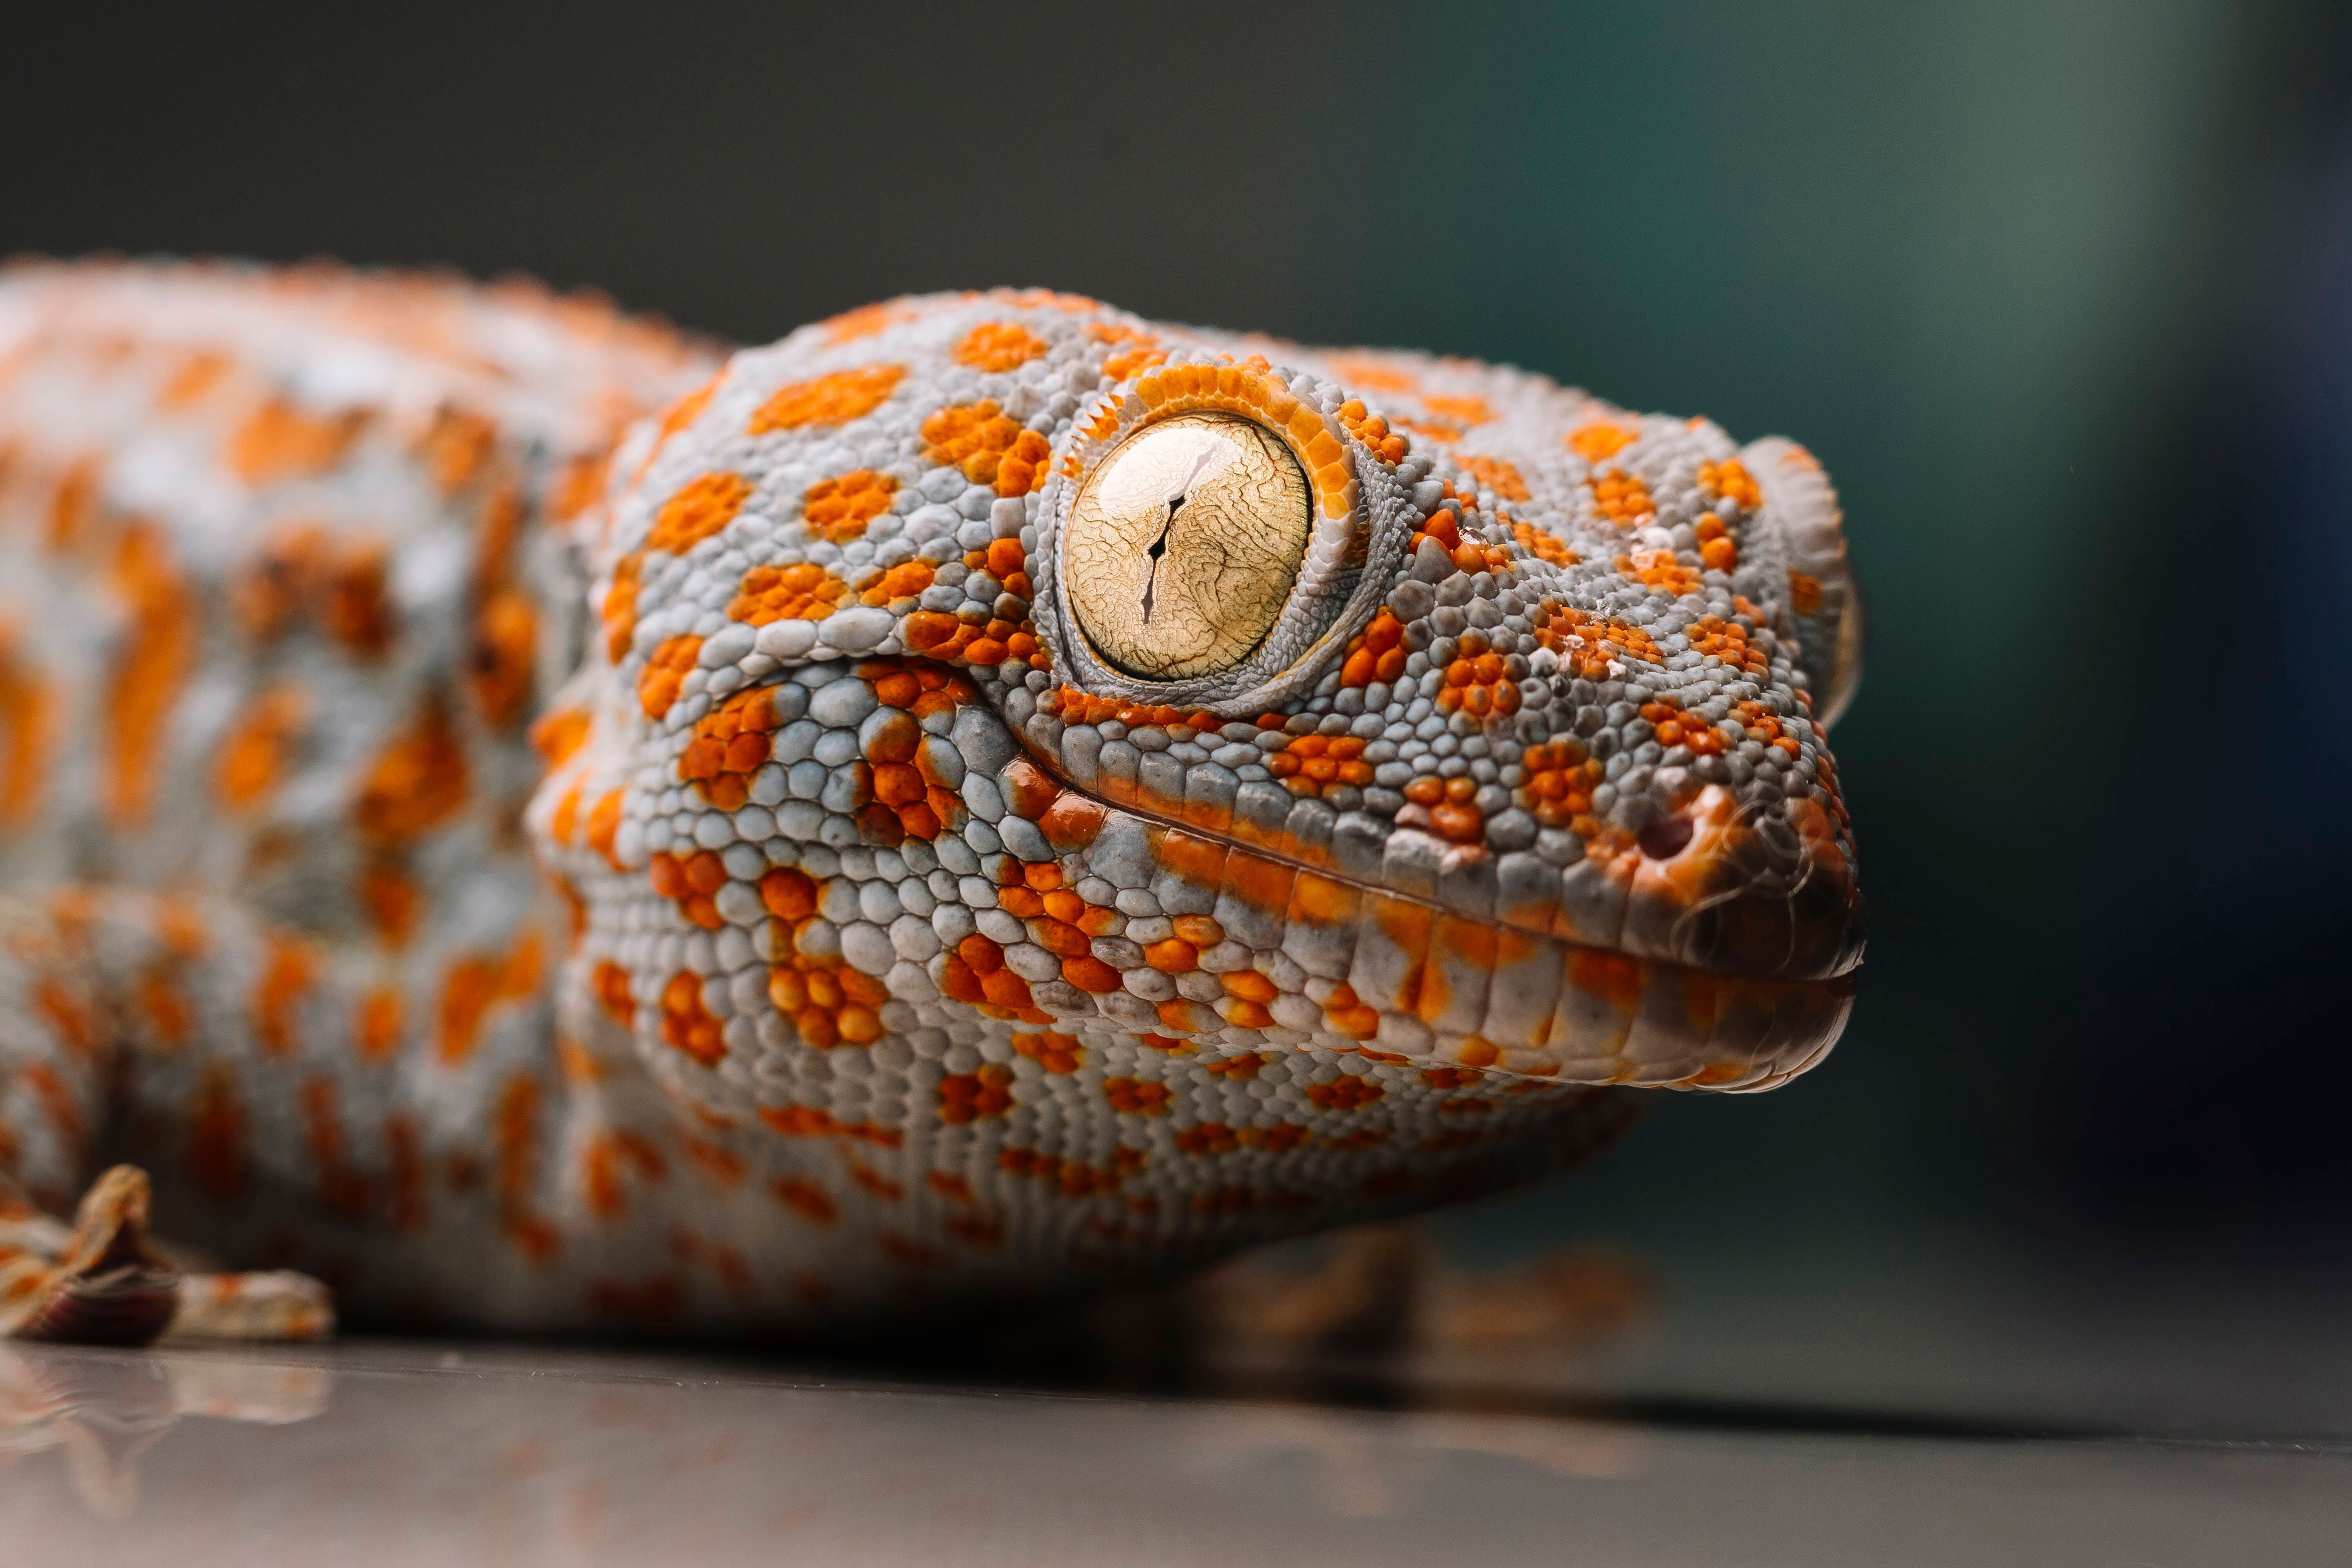 Mit ihrer blau- bis braungrauer Grundfarbe sowie den roten und blauen Flecken sind Tokeh-Geckos sehr auffällig. Sie können außerdem bellende Töne von sich geben.